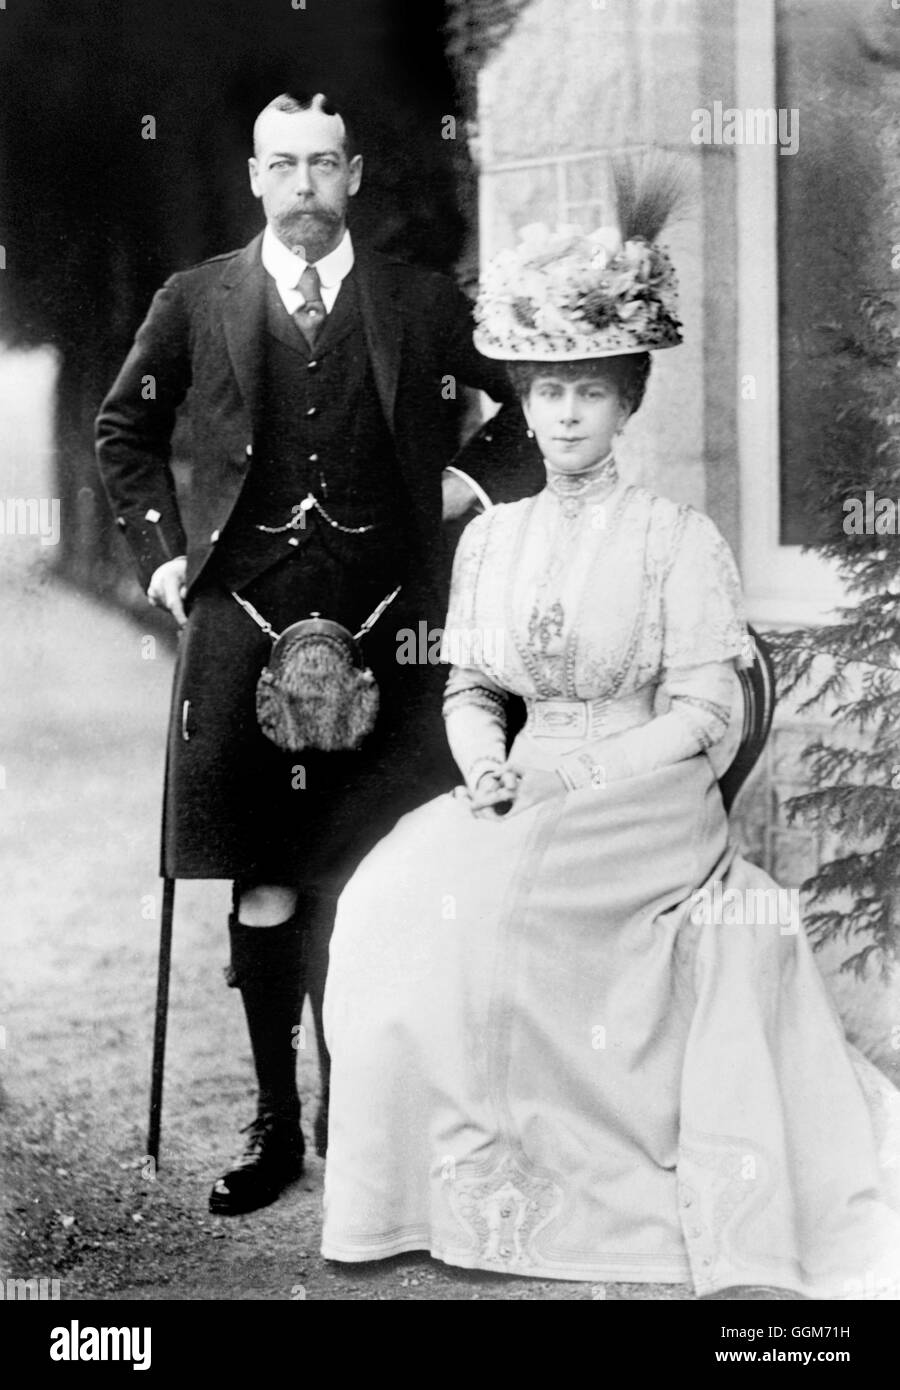 König George V (1865-1936) und seiner Frau, Königin Mary (Mary von Teck: 1867-1953), aufgenommen, als er Prinz von Wales war. Georg v. regierte von 1910 bis 1936. Foto von Bains News Service, c1909. Stockfoto